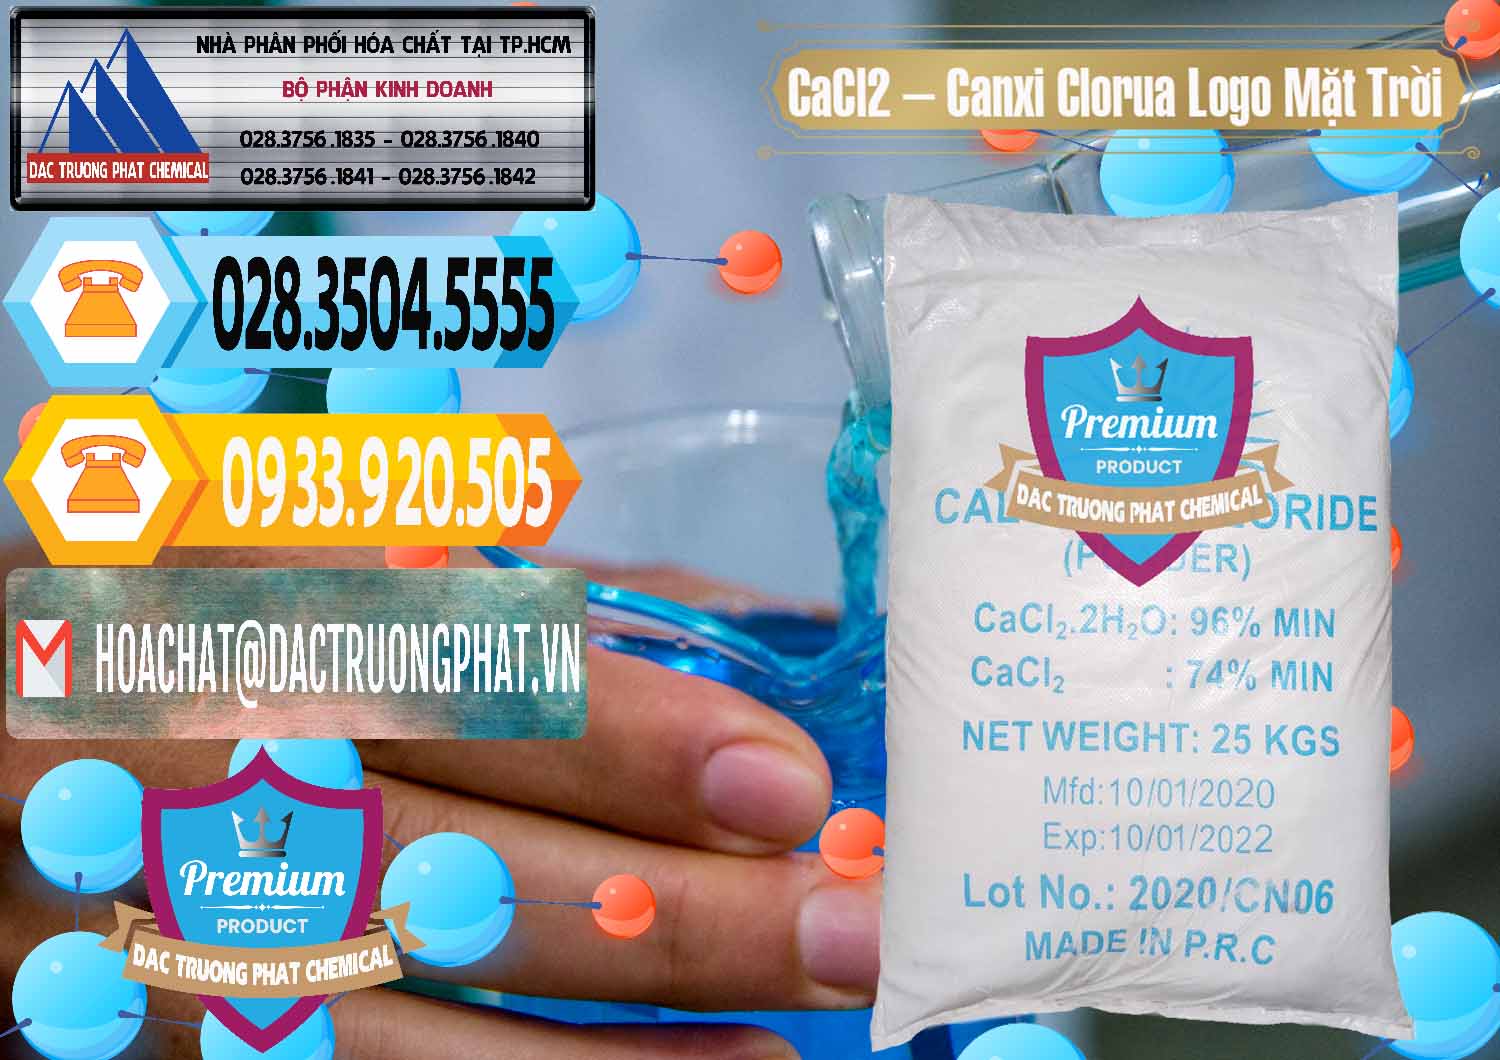 Cty kinh doanh ( bán ) CaCl2 – Canxi Clorua 96% Logo Mặt Trời Trung Quốc China - 0041 - Công ty phân phối _ cung cấp hóa chất tại TP.HCM - hoachattayrua.net